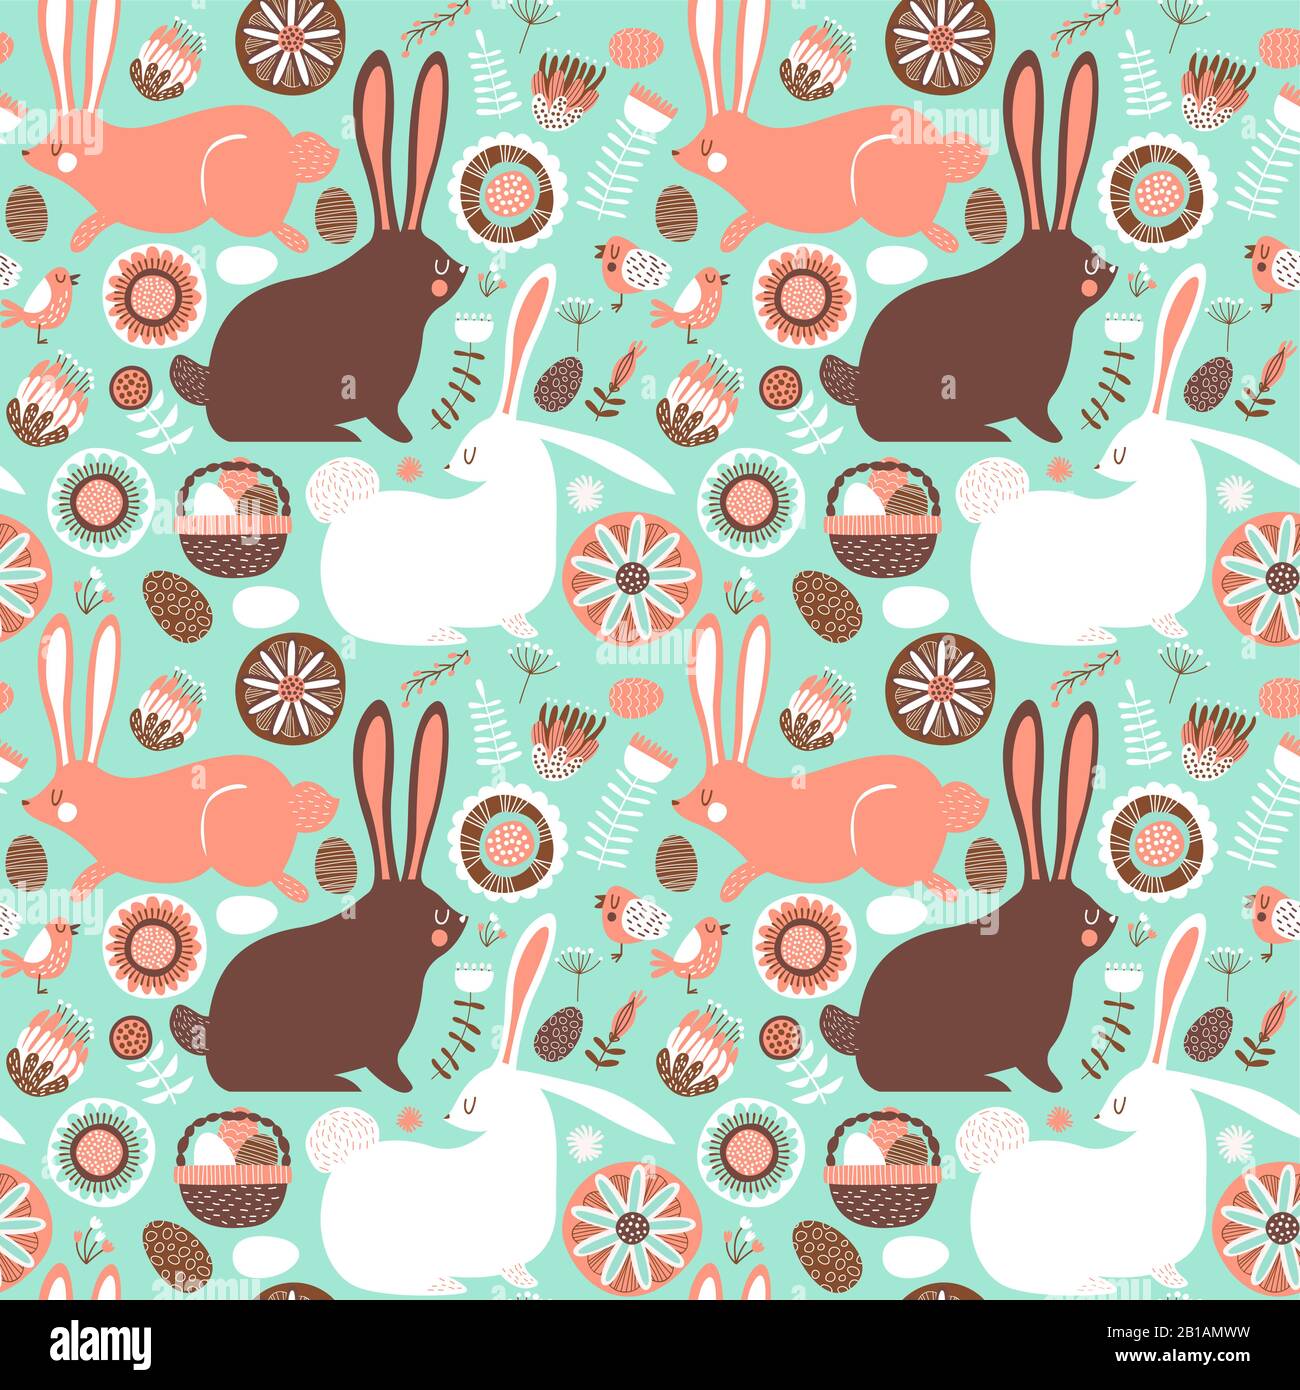 Oster Kaninchen nahtloses Muster, festlicher Hintergrund für traditionelle Feiertagsereignisse. Süße handgezeichnete bunte Tierdodles mit floraler Volksdekoration und Stock Vektor